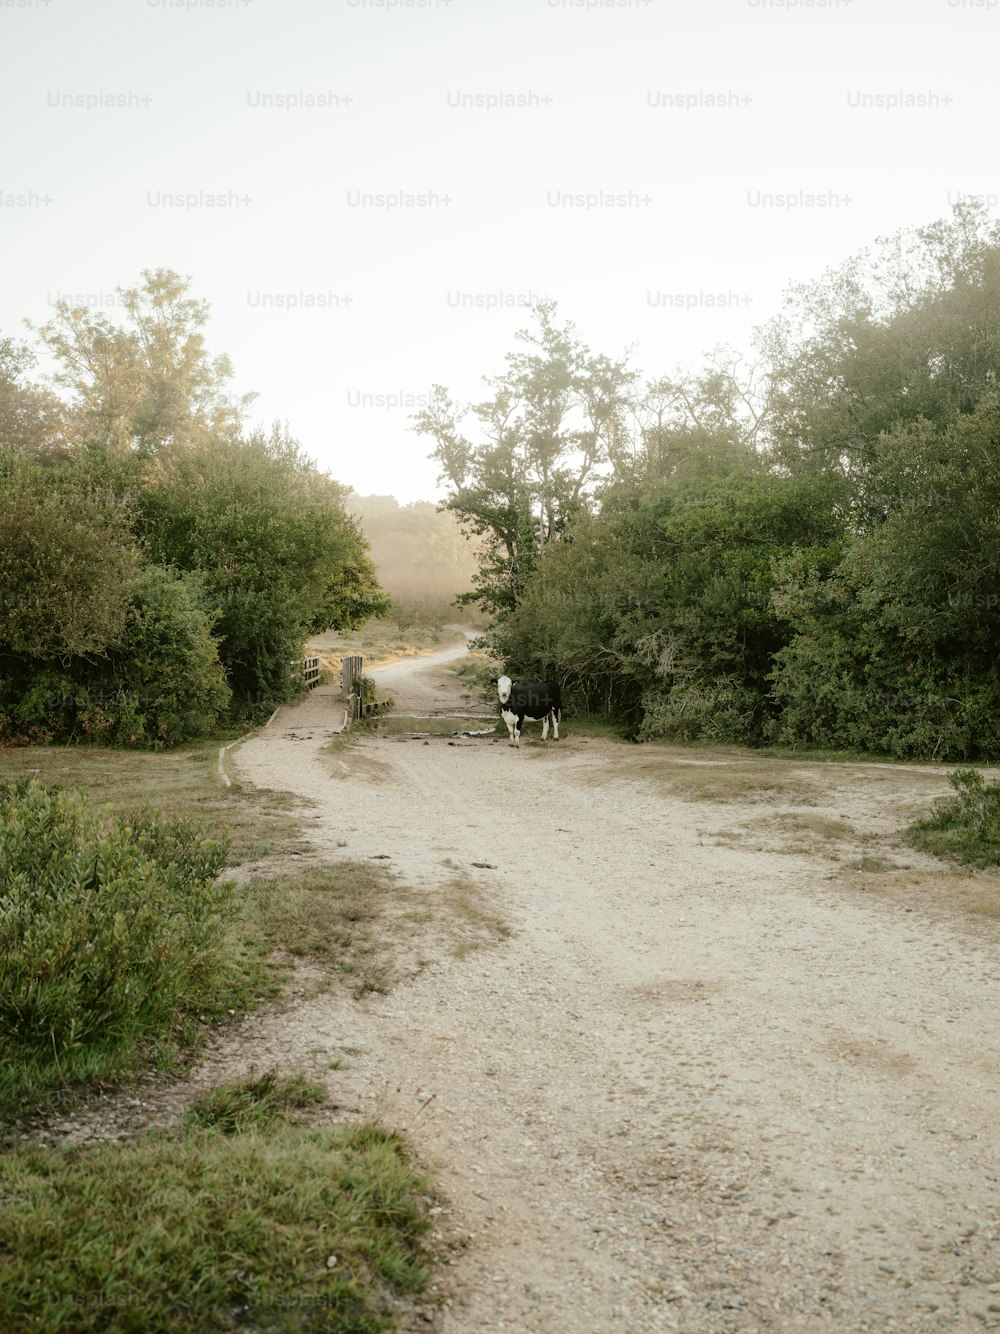 Un couple de vaches marchant sur un chemin de terre